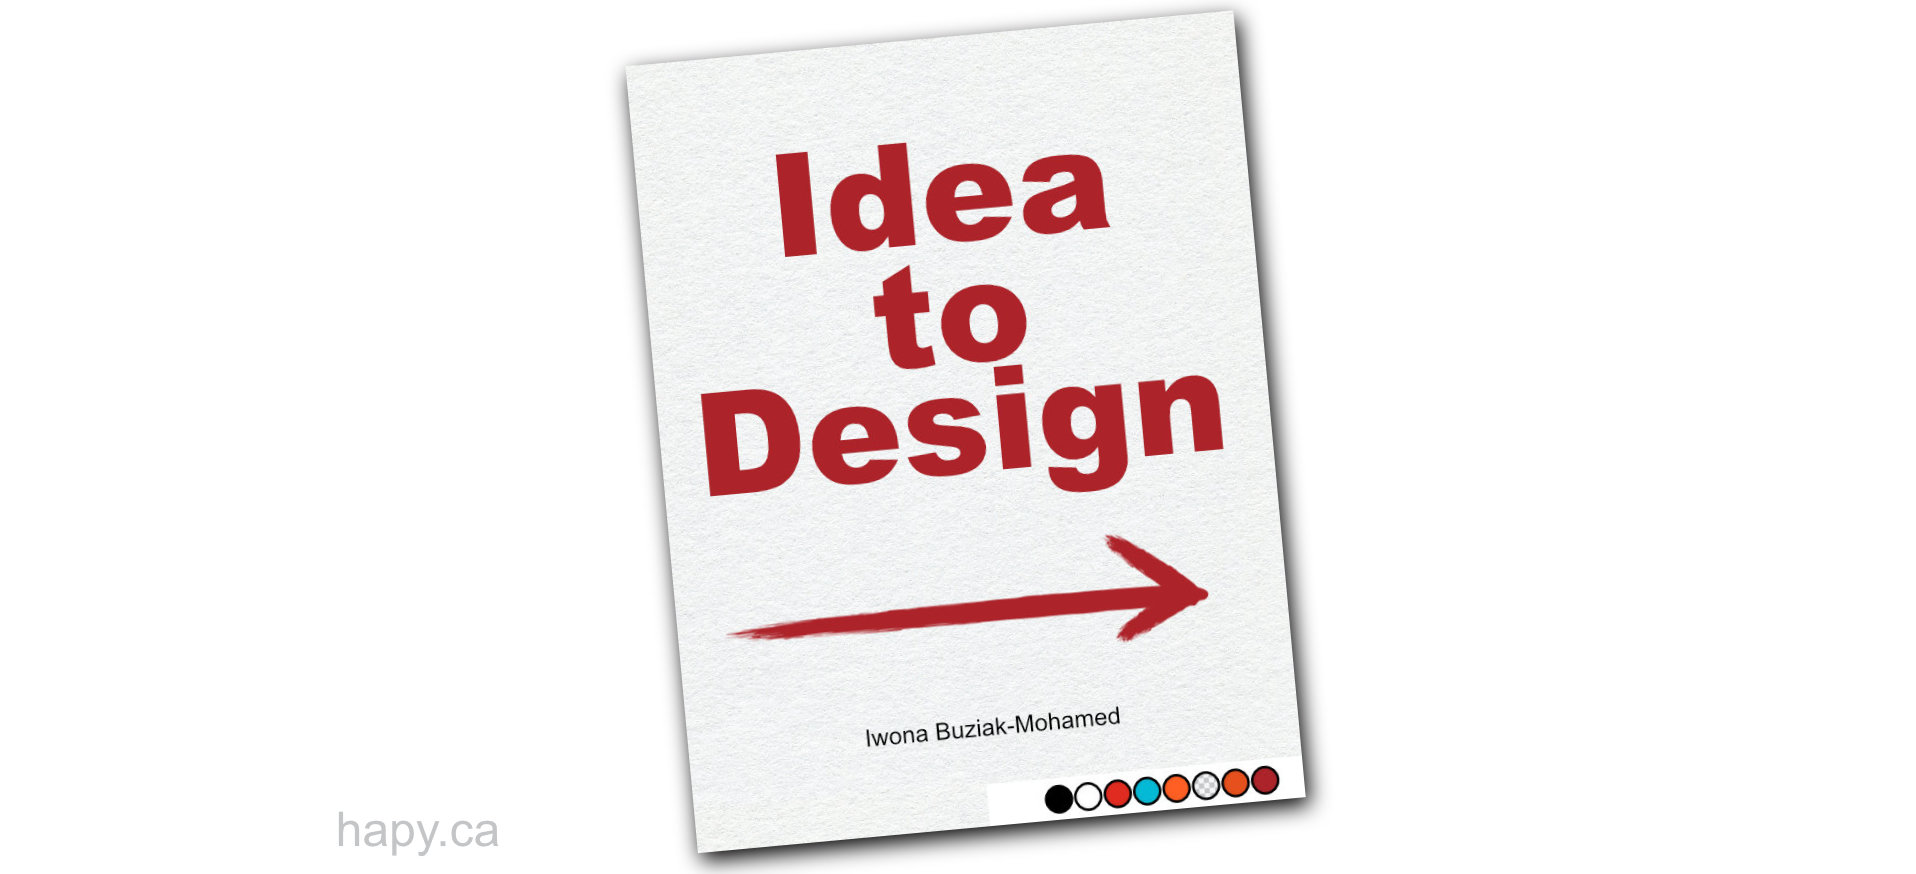 Idea to Design - Iwona Buziak-Mohamed-hapy.ca